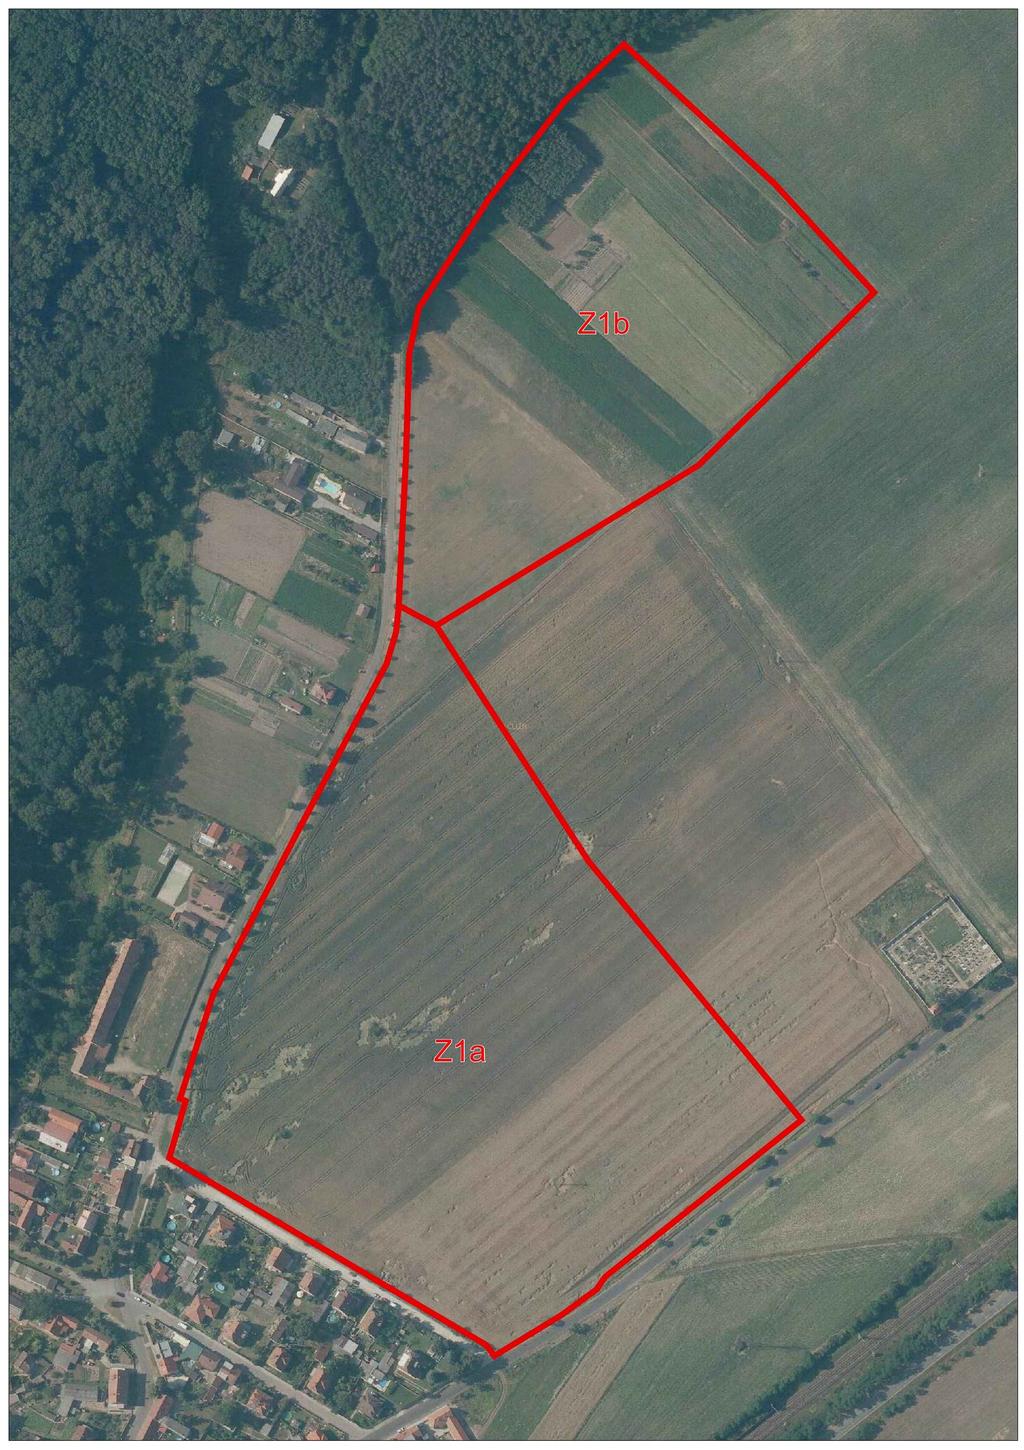 Územní studie ploch Z1a a Z1b a. Vymezení řešeného území Územní studie řeší využití ploch Z1a a Z1b navržené v ÚP Dobříň. Řešené území se nachází na severovýchodním okraji obce Dobříň.